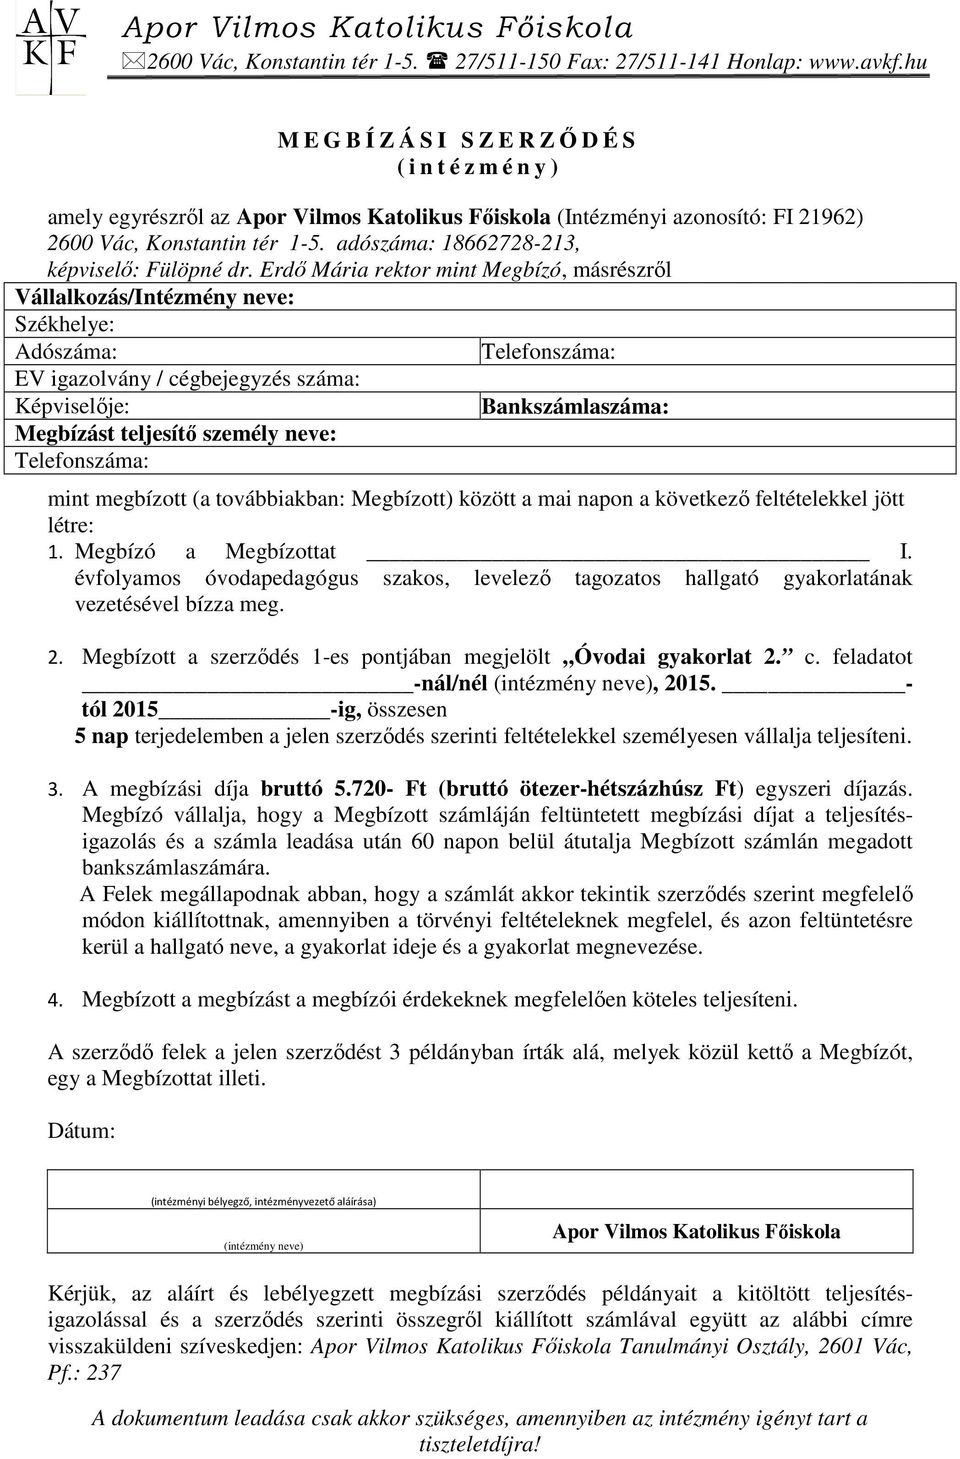 Apor Vilmos Katolikus Fıiskola - PDF Ingyenes letöltés